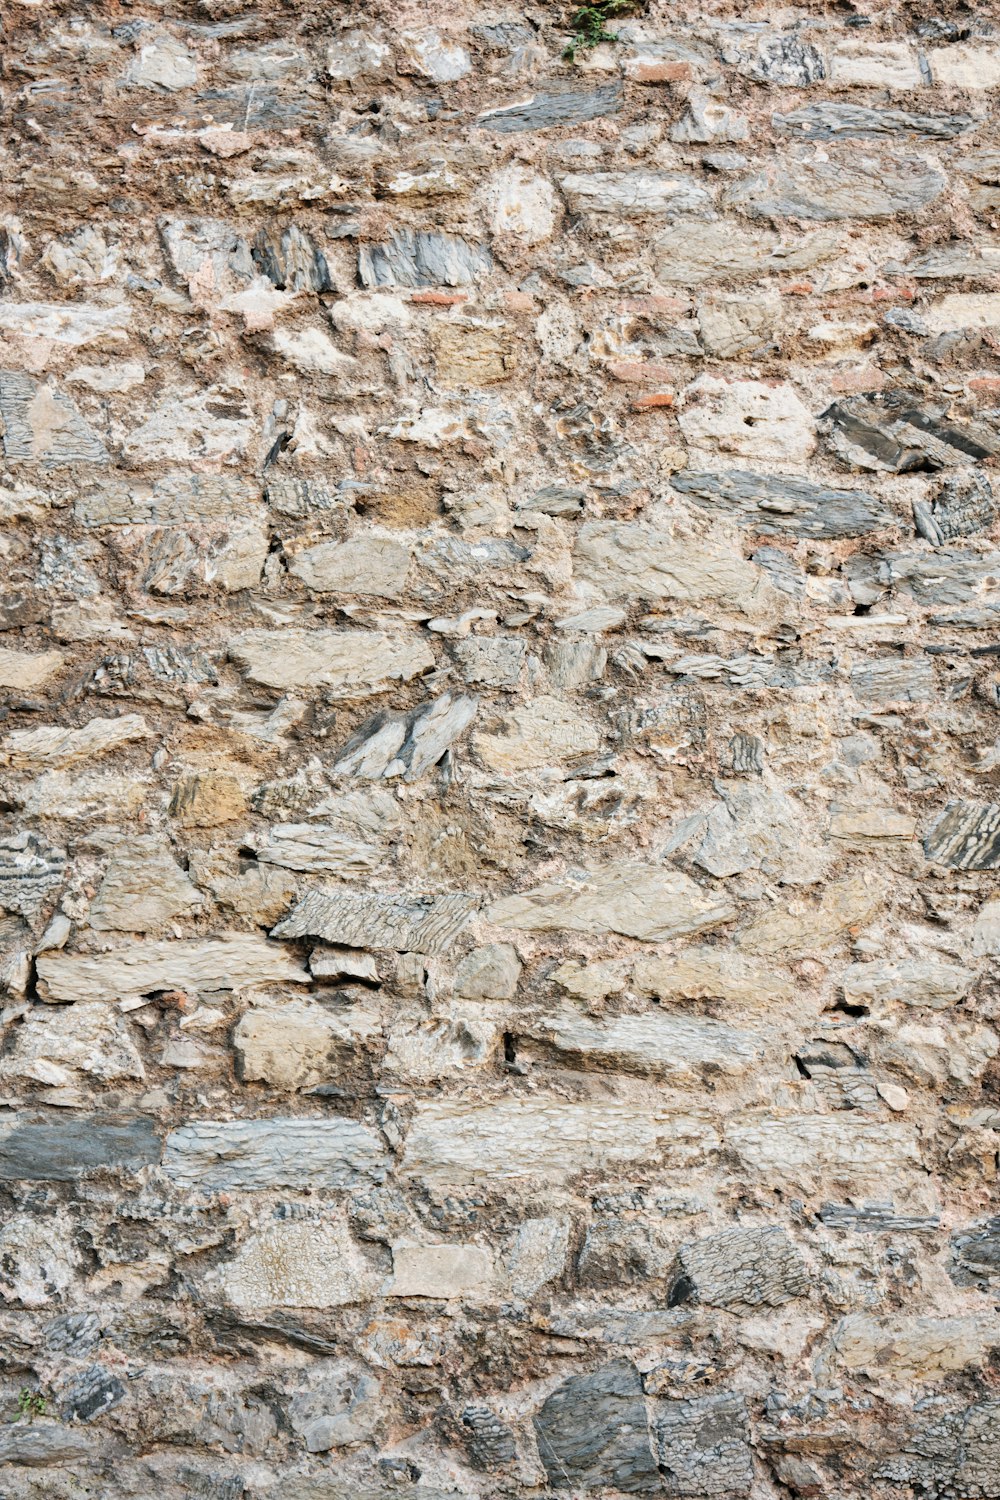 Un pájaro está encaramado en un muro de piedra